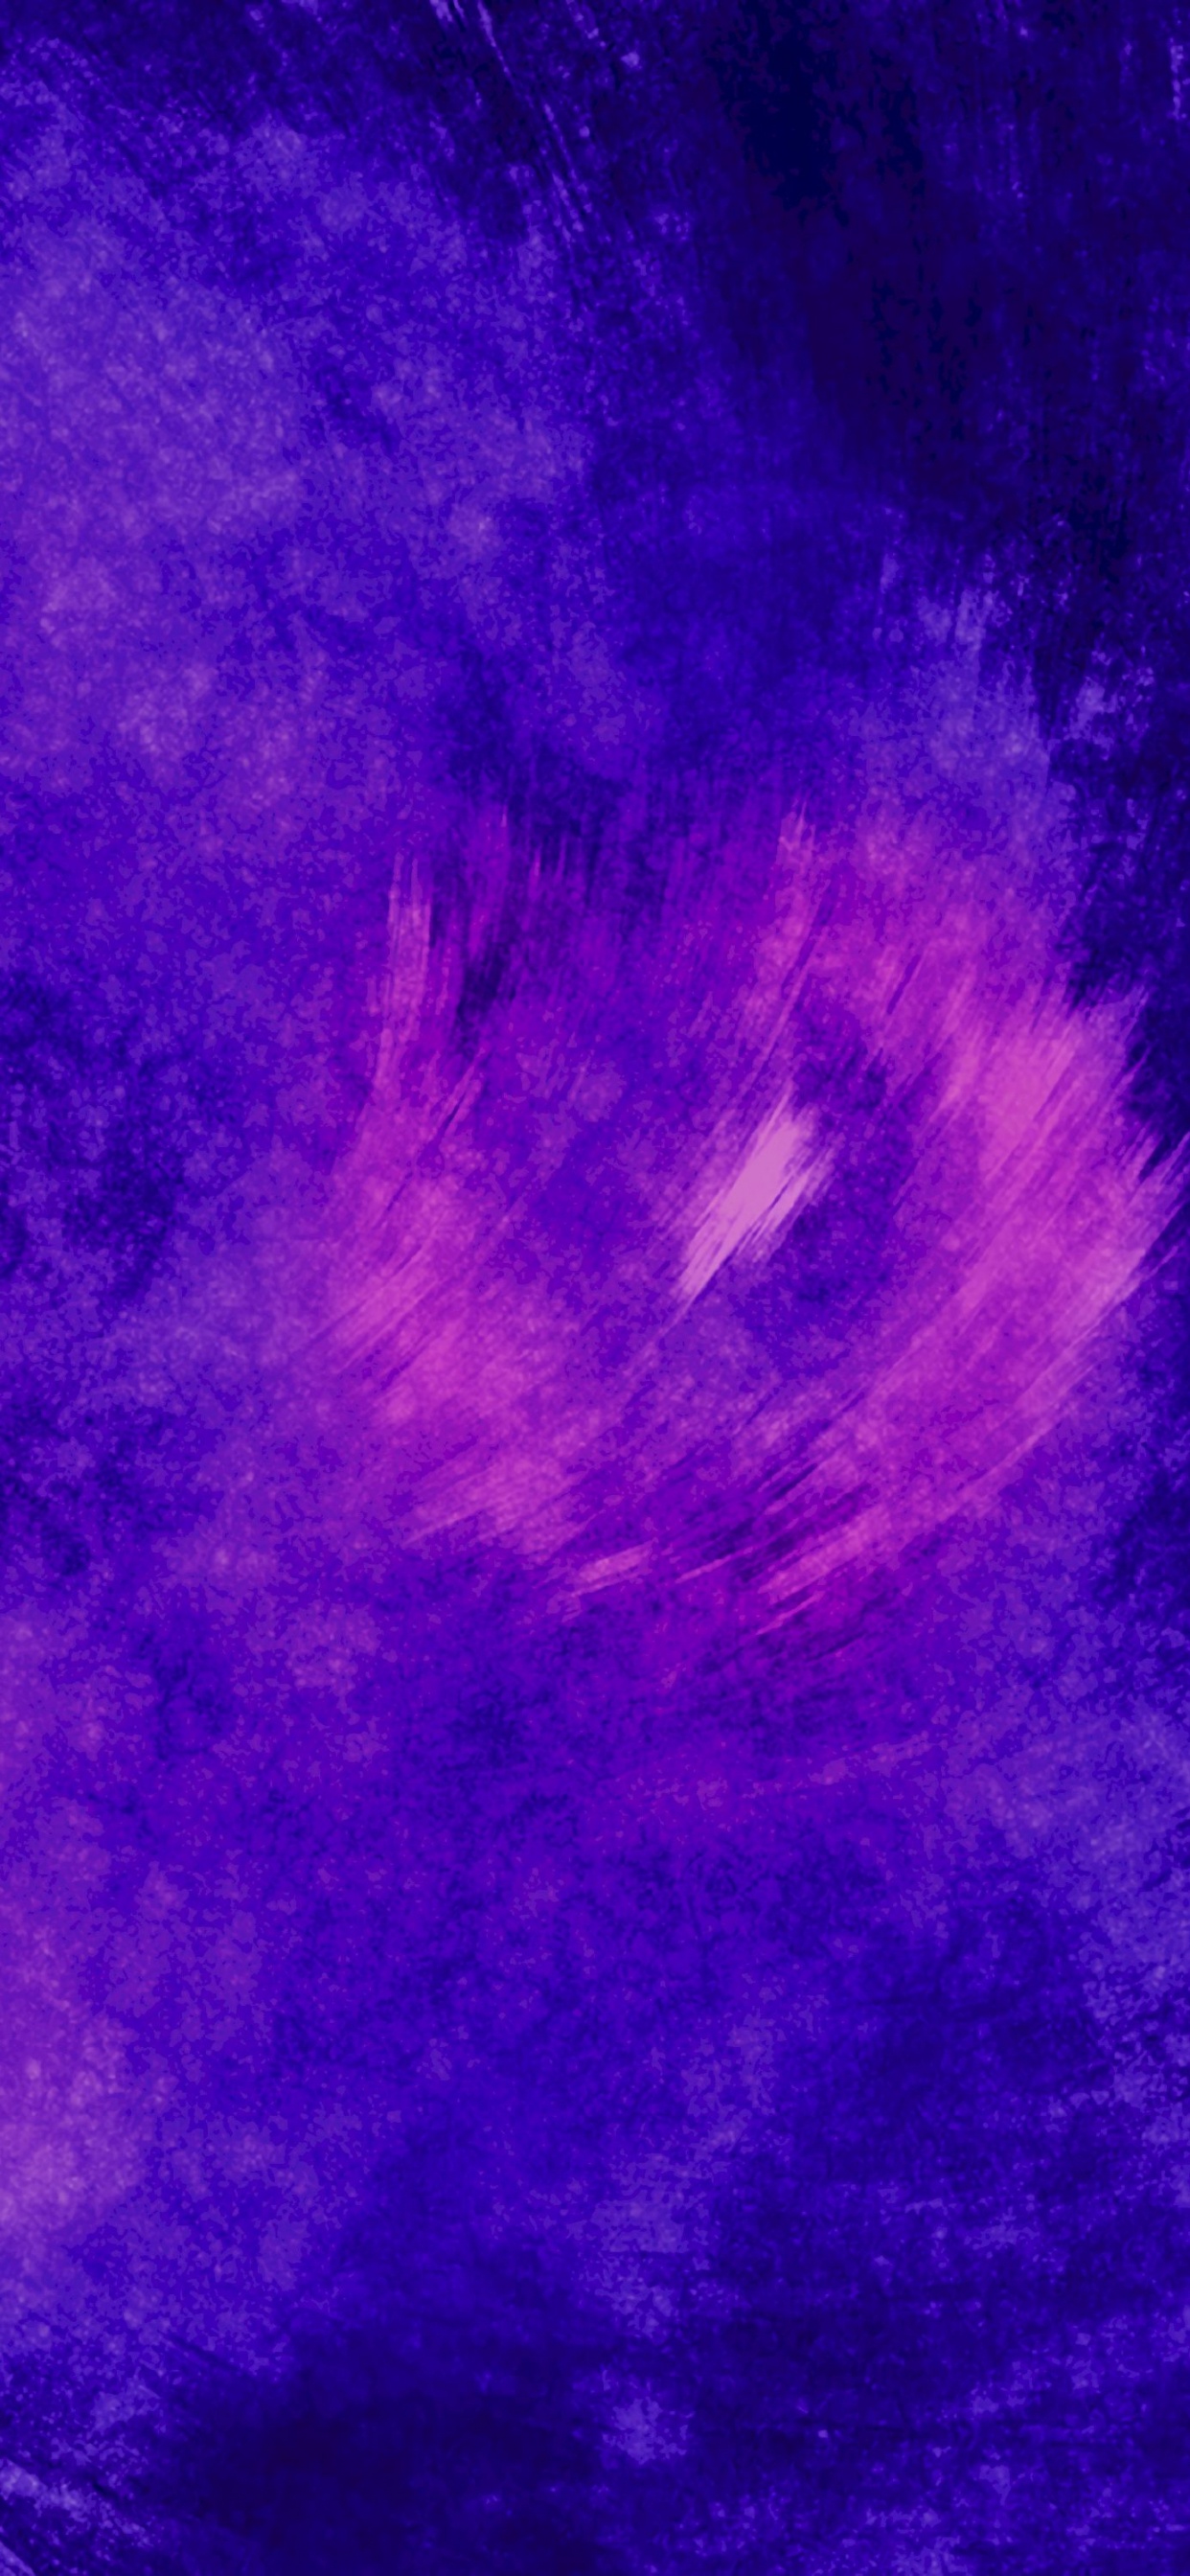 Ilustración de Galaxia Azul y Blanca. Wallpaper in 1242x2688 Resolution